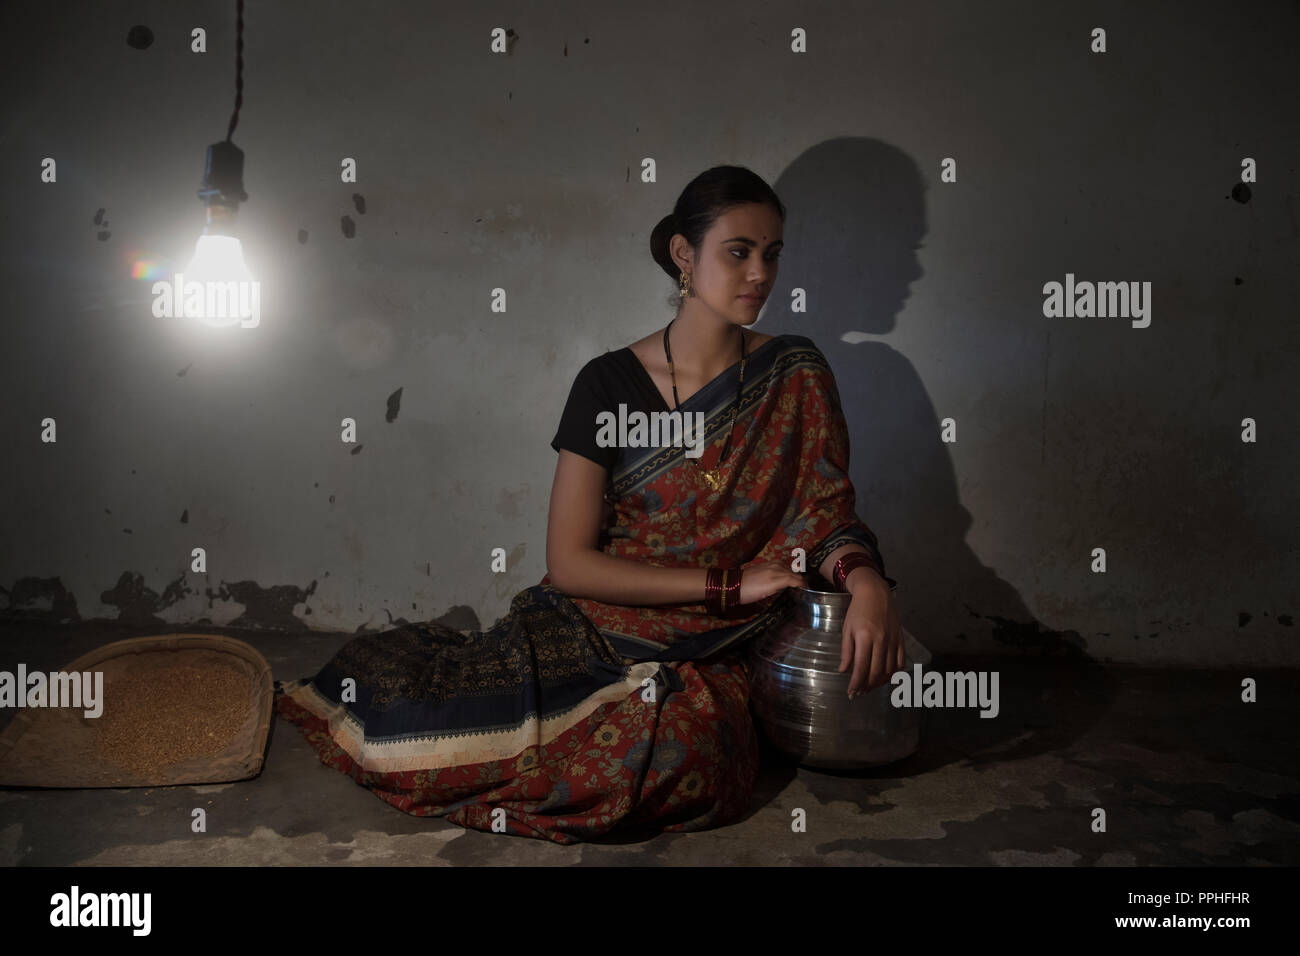 Bel villaggio donna seduta sul pavimento con una pentola in acciaio e di spulatura ventola in un vecchio basso ambiente illuminato e guardando lontano. Foto Stock